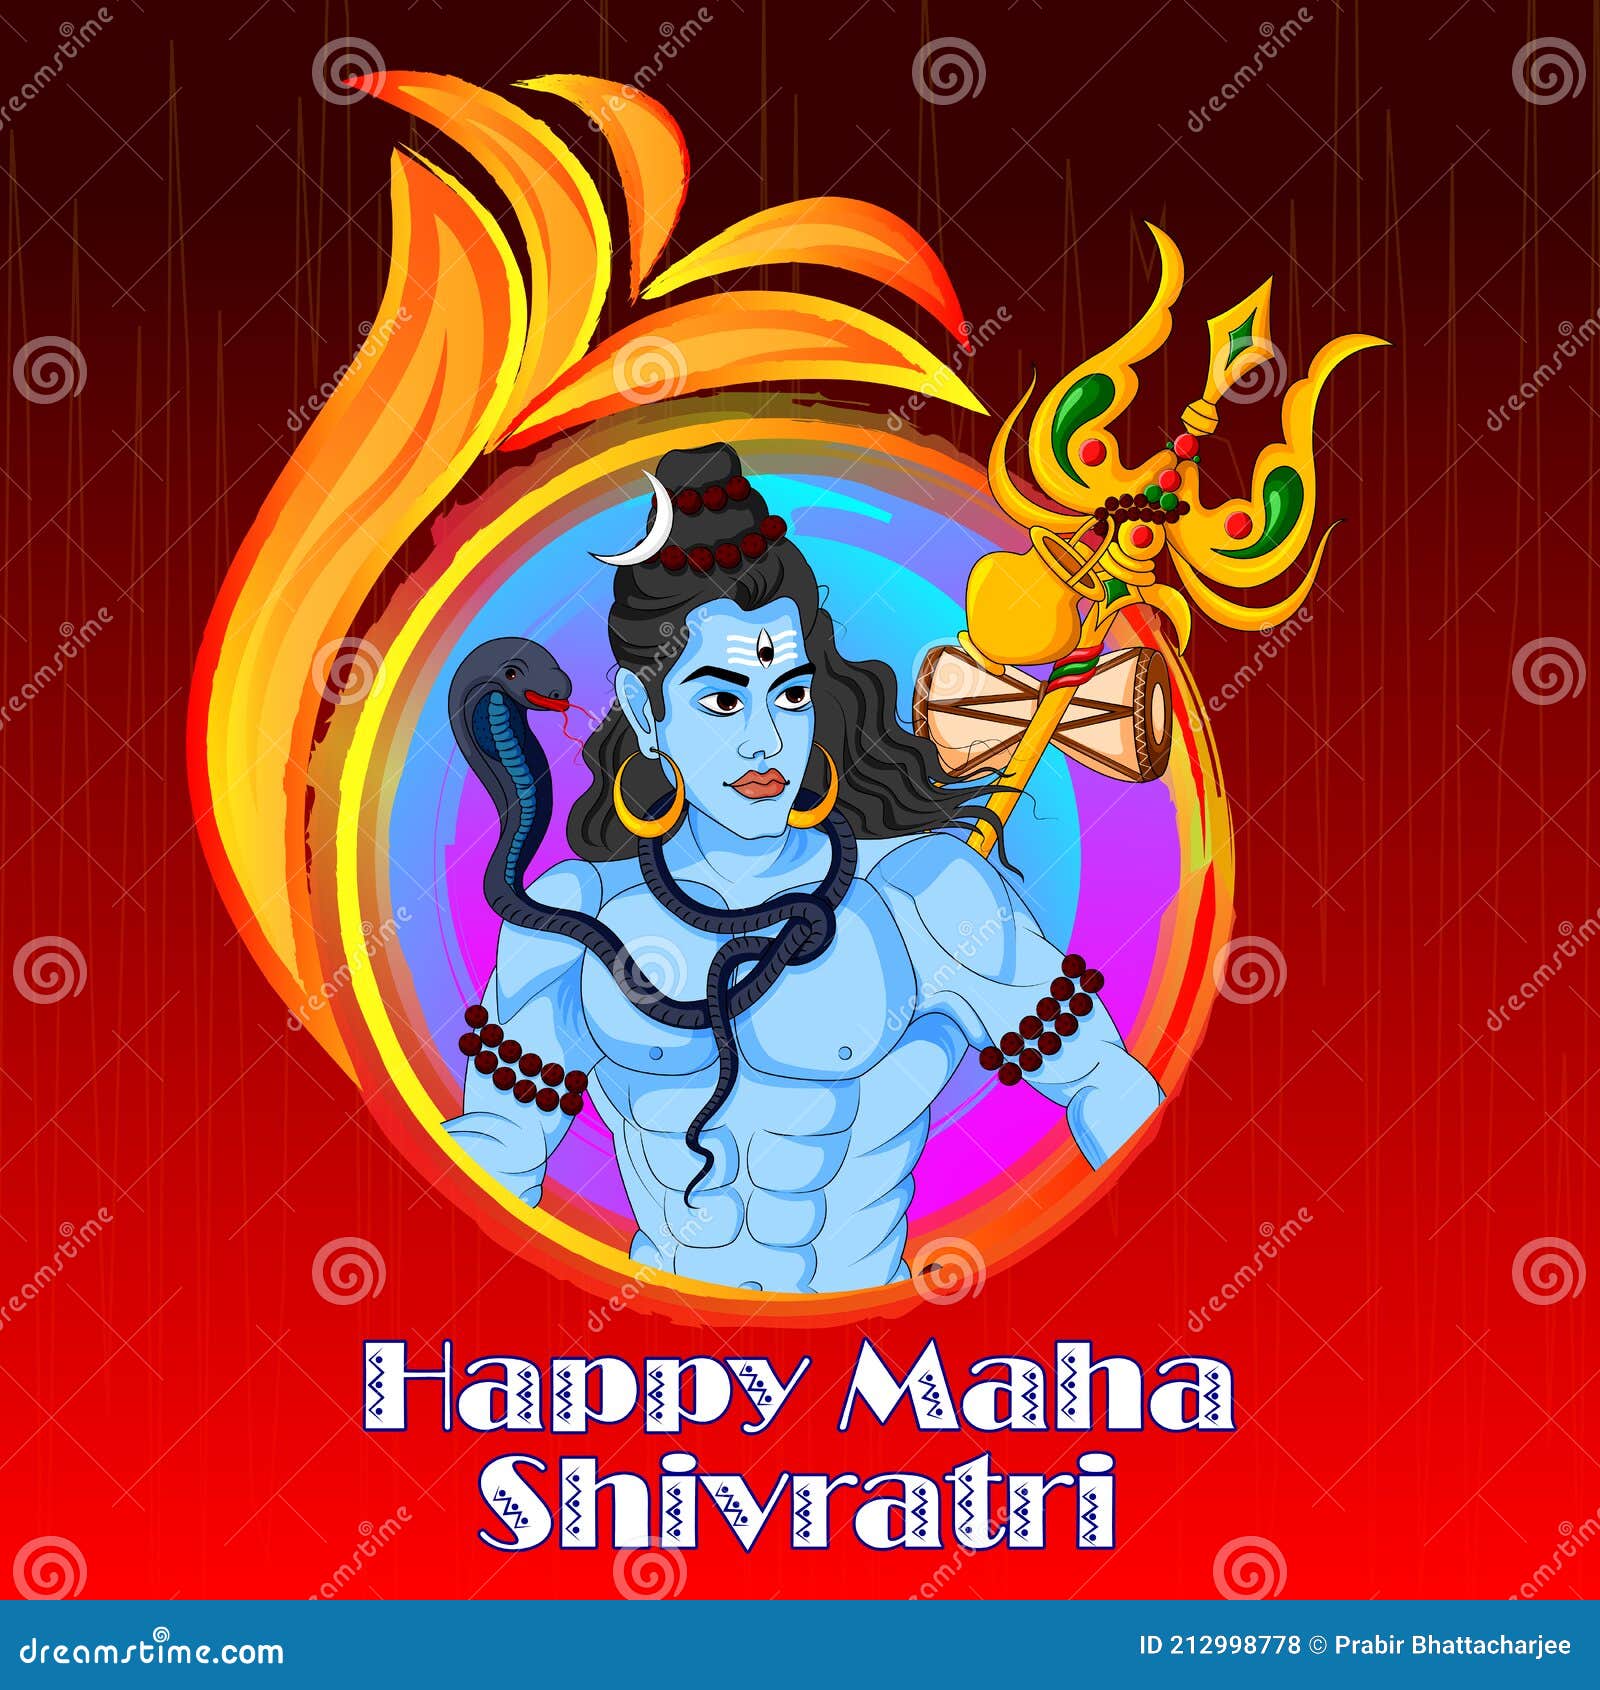 Lord Shiva on Maha Shivratri Religious Festival of India Stock Vector ...